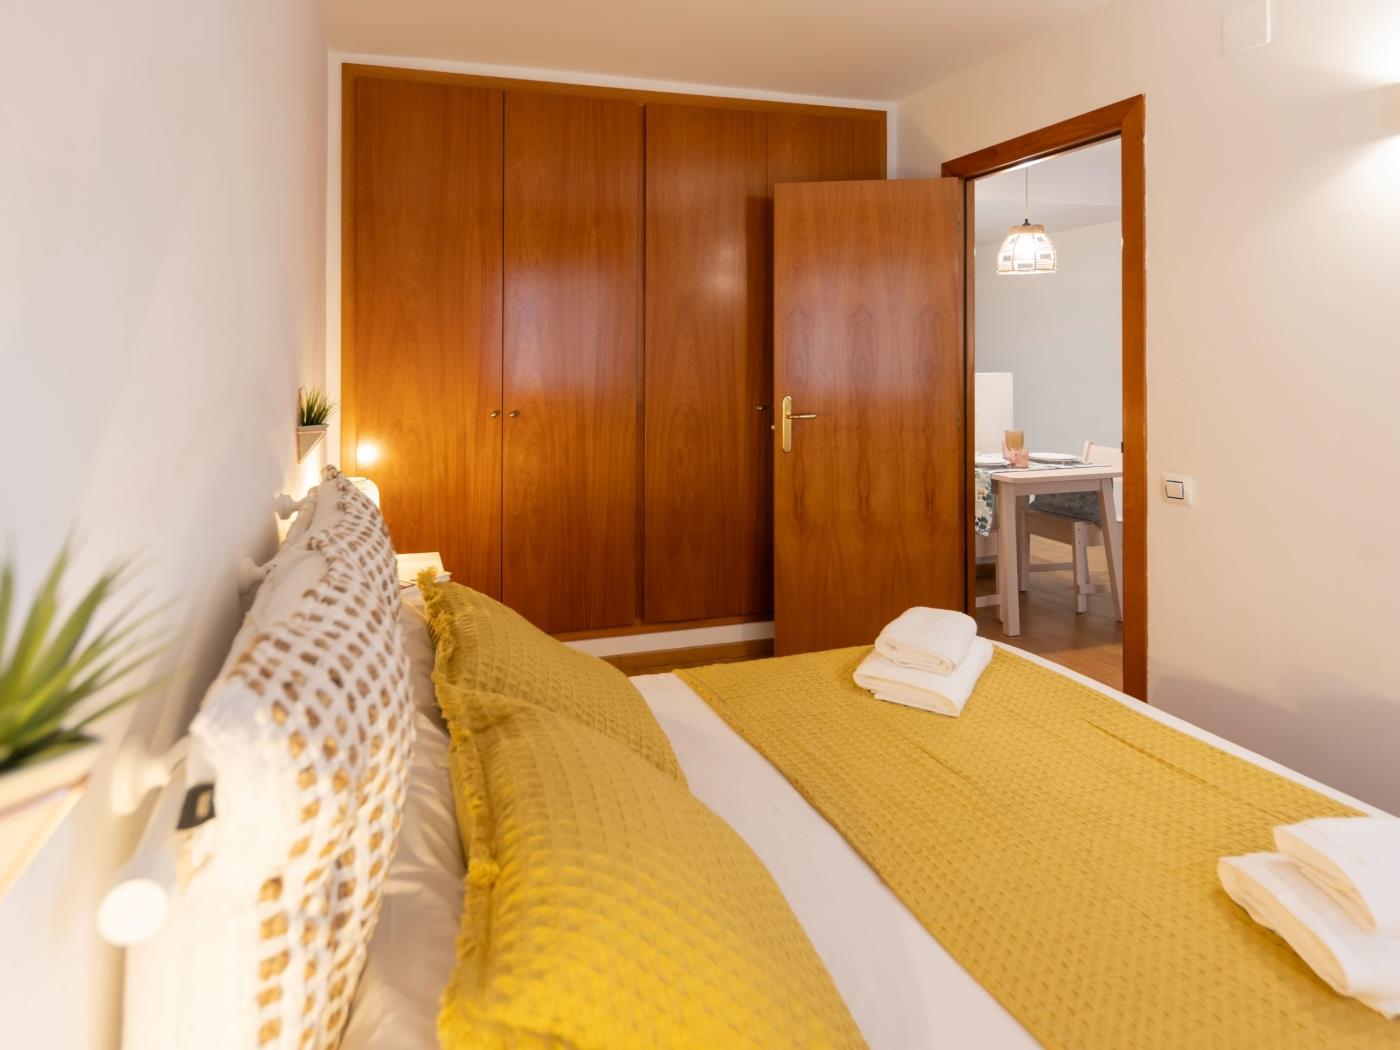 Bravissimo Sant Martí, knus 1-slaapkamer appt .en Girona